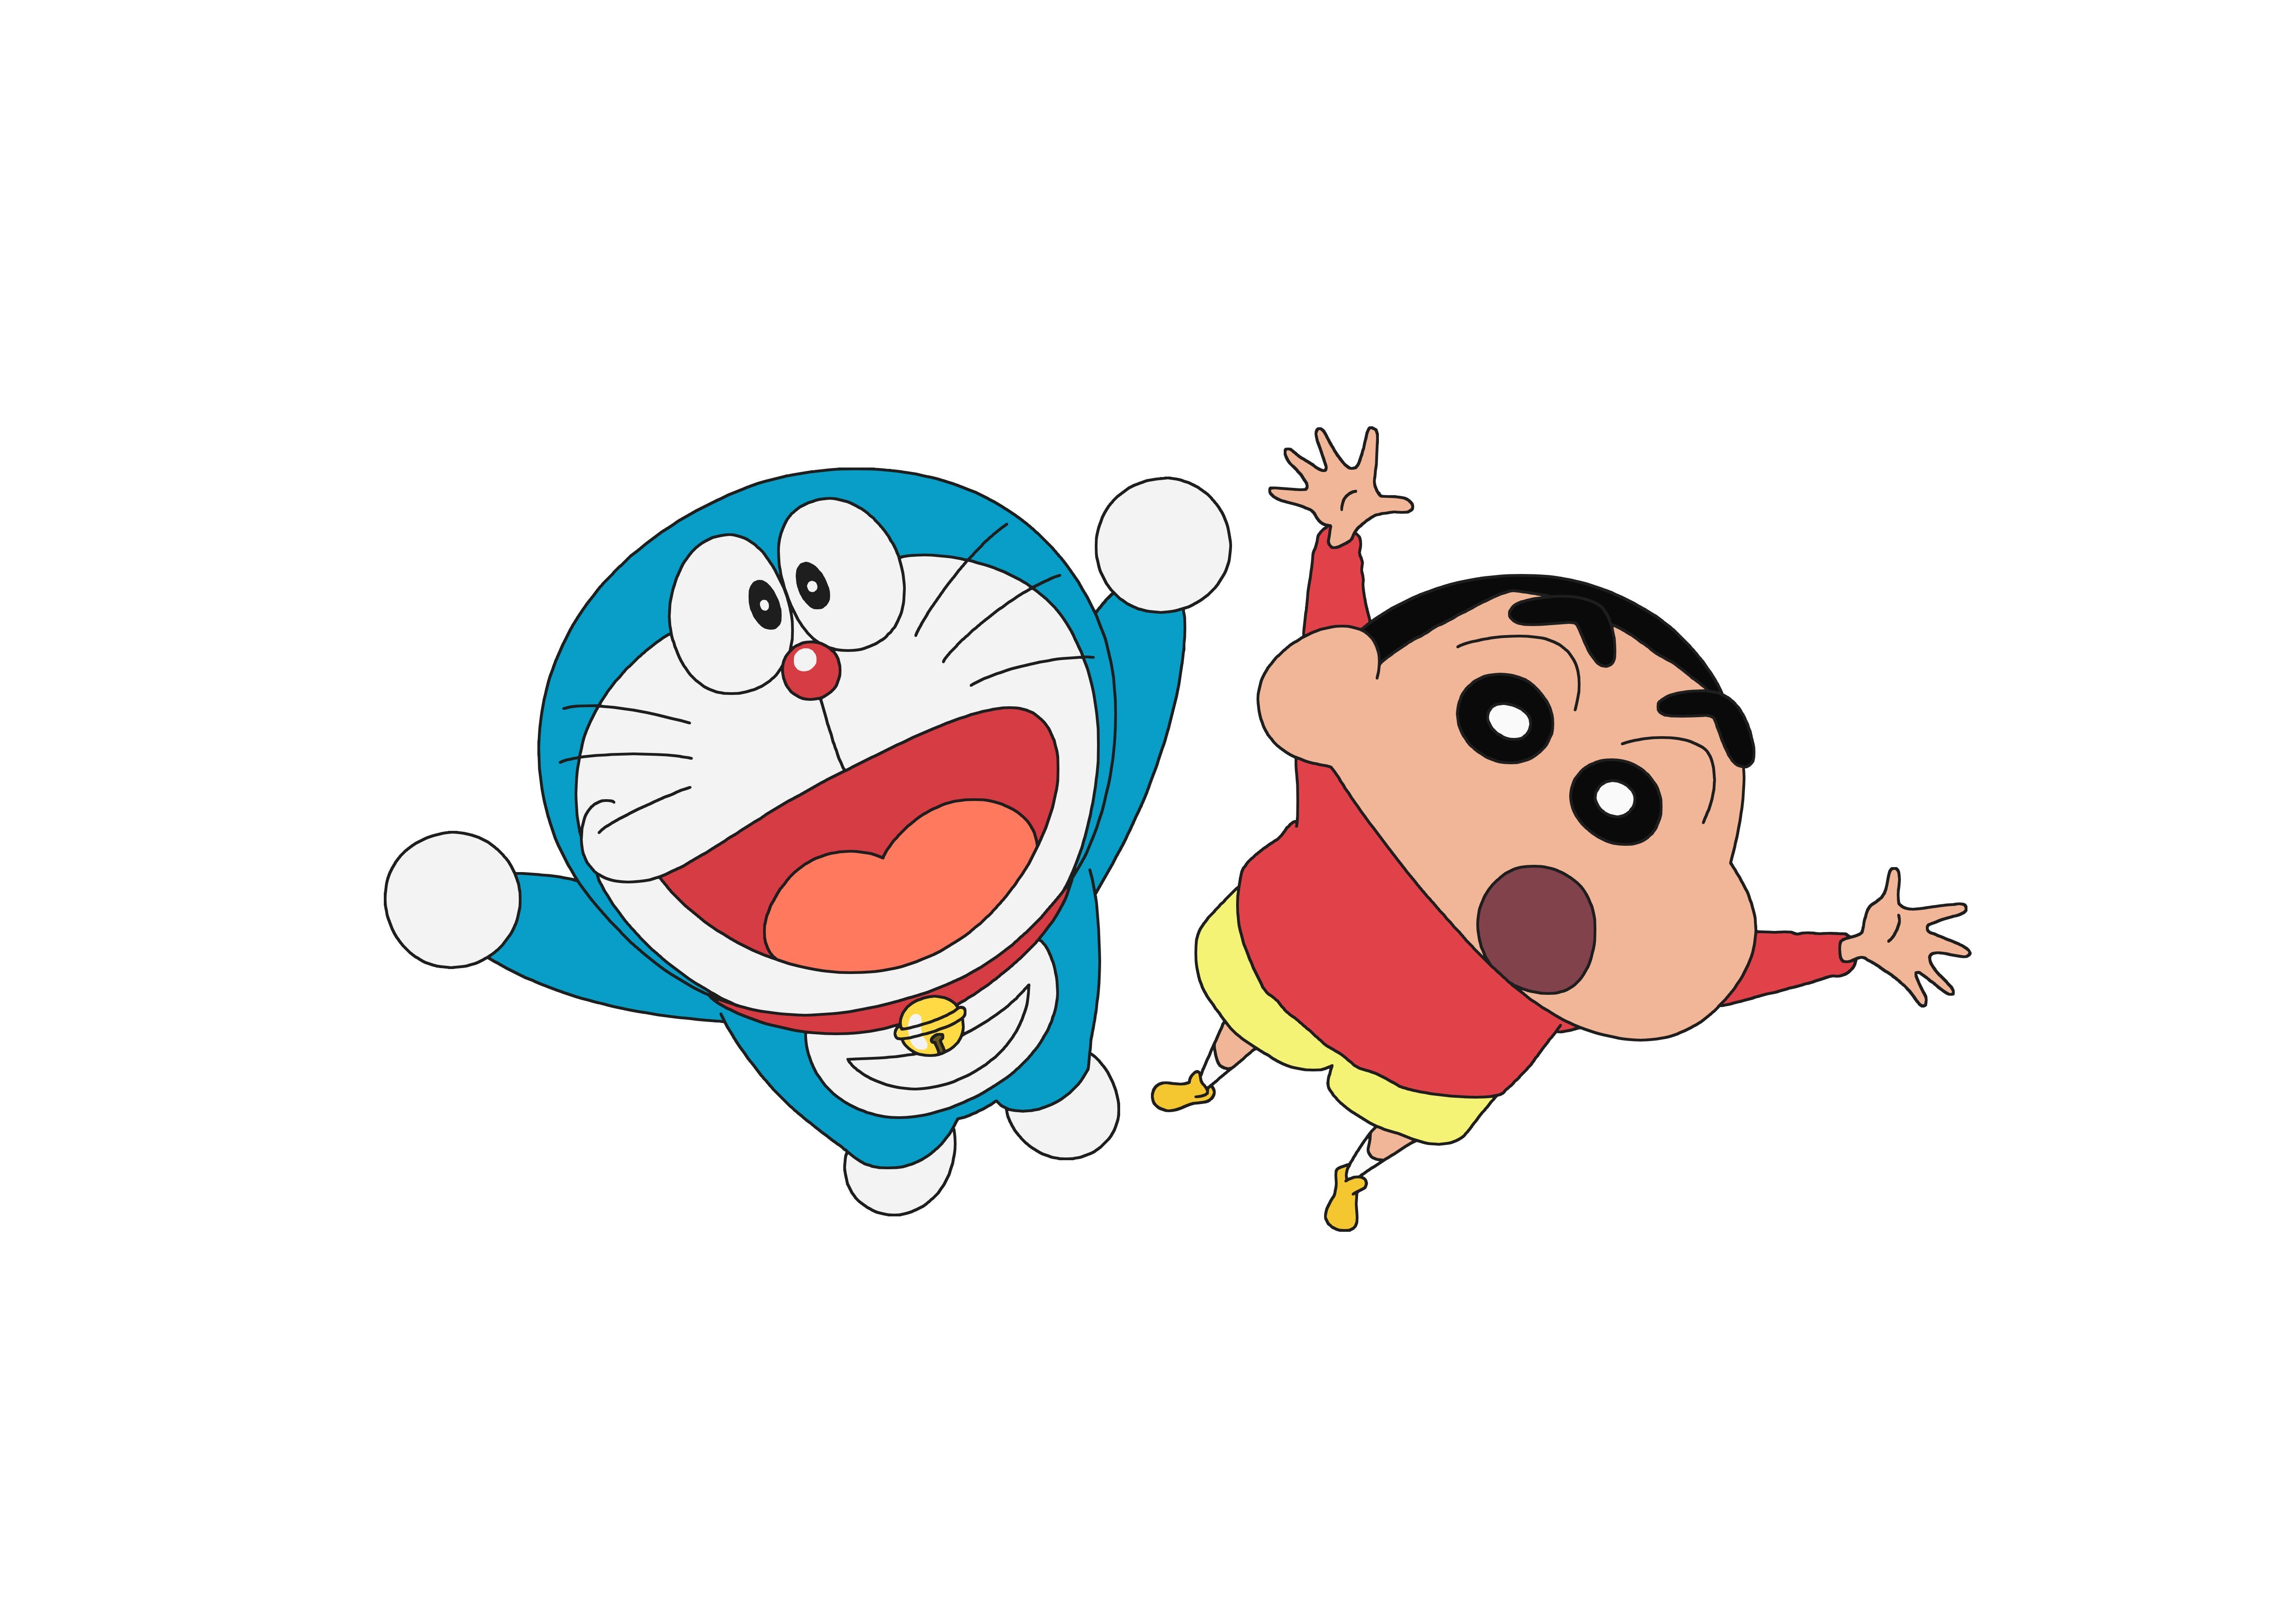 朝日电视台宣布国民动画「哆啦A梦」「蜡笔小新」将移到周六晚播出